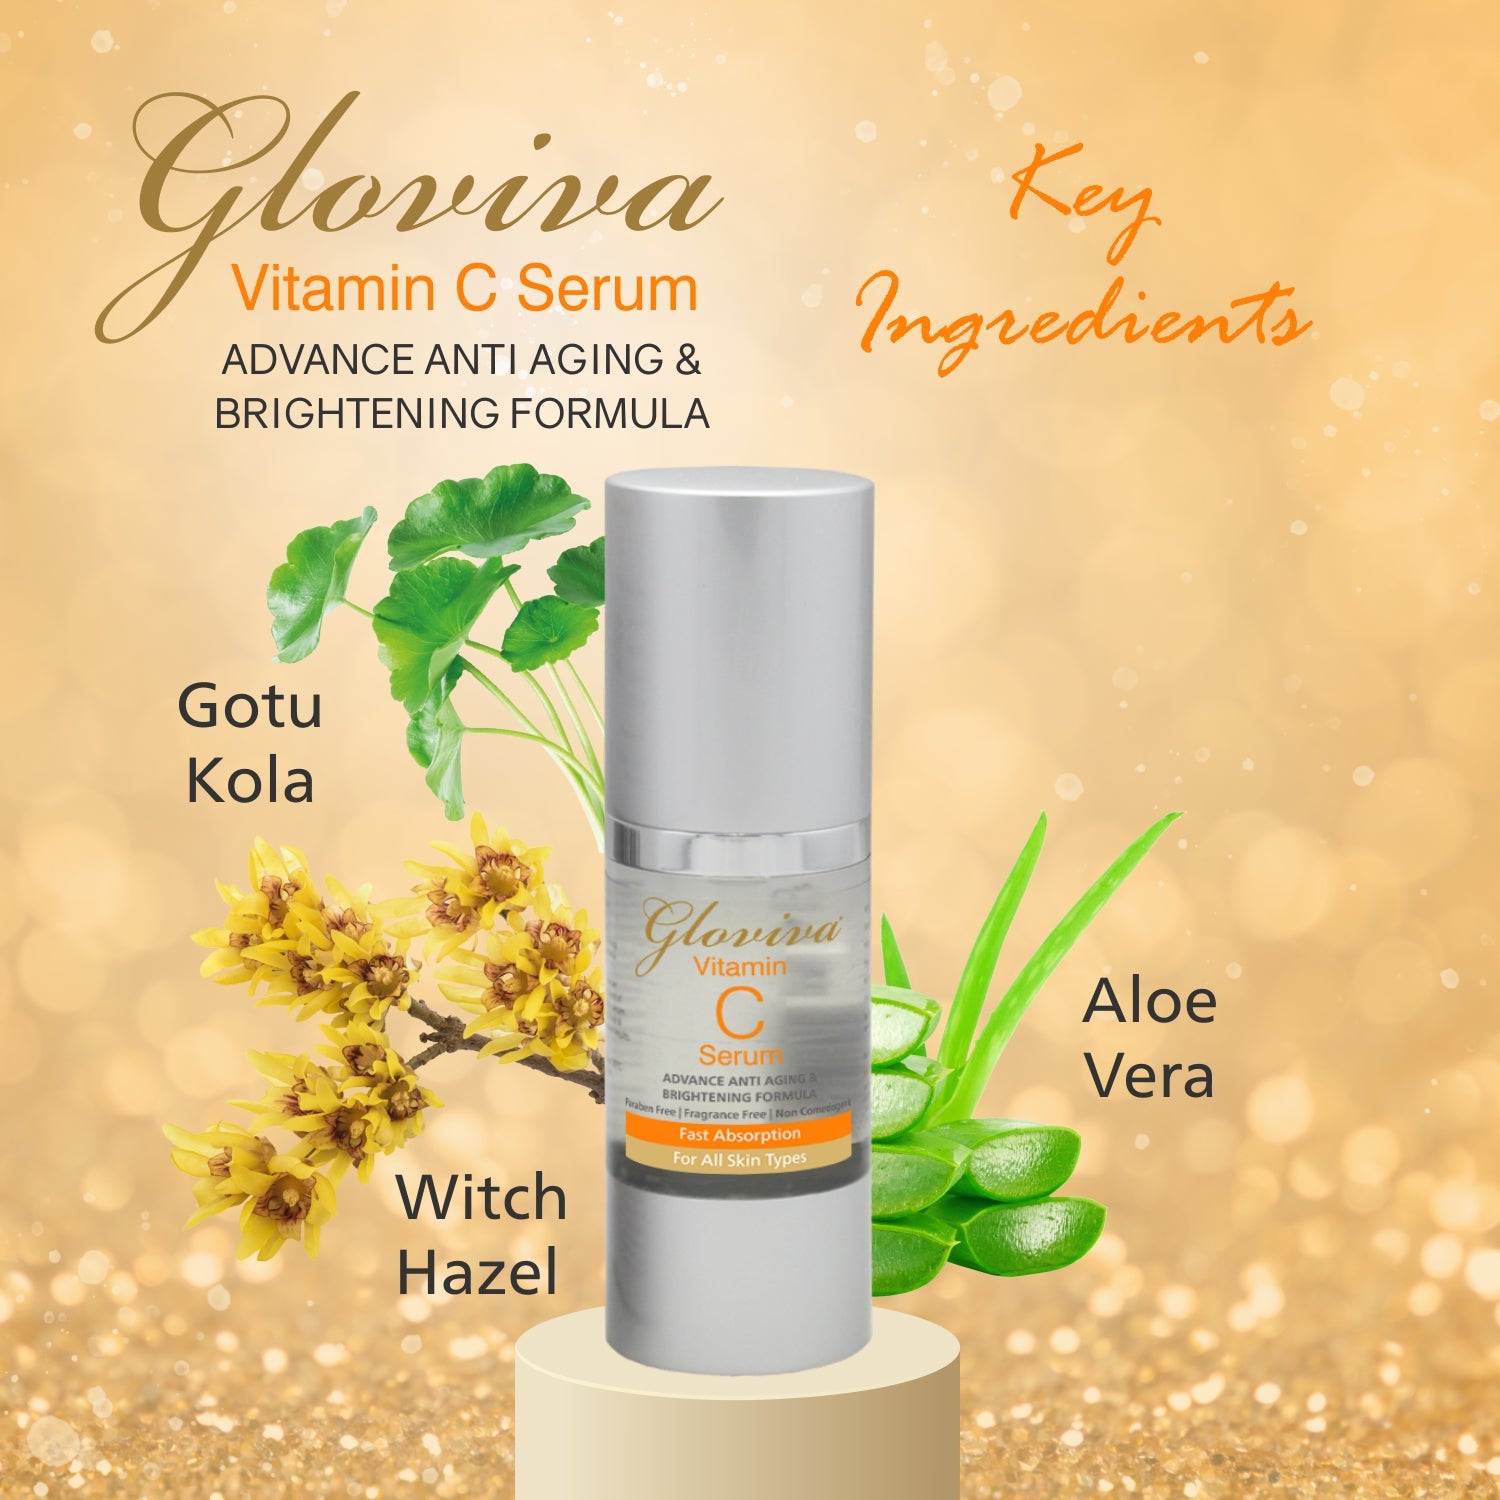 Gloviva Vitamin C Serum (30 ml)